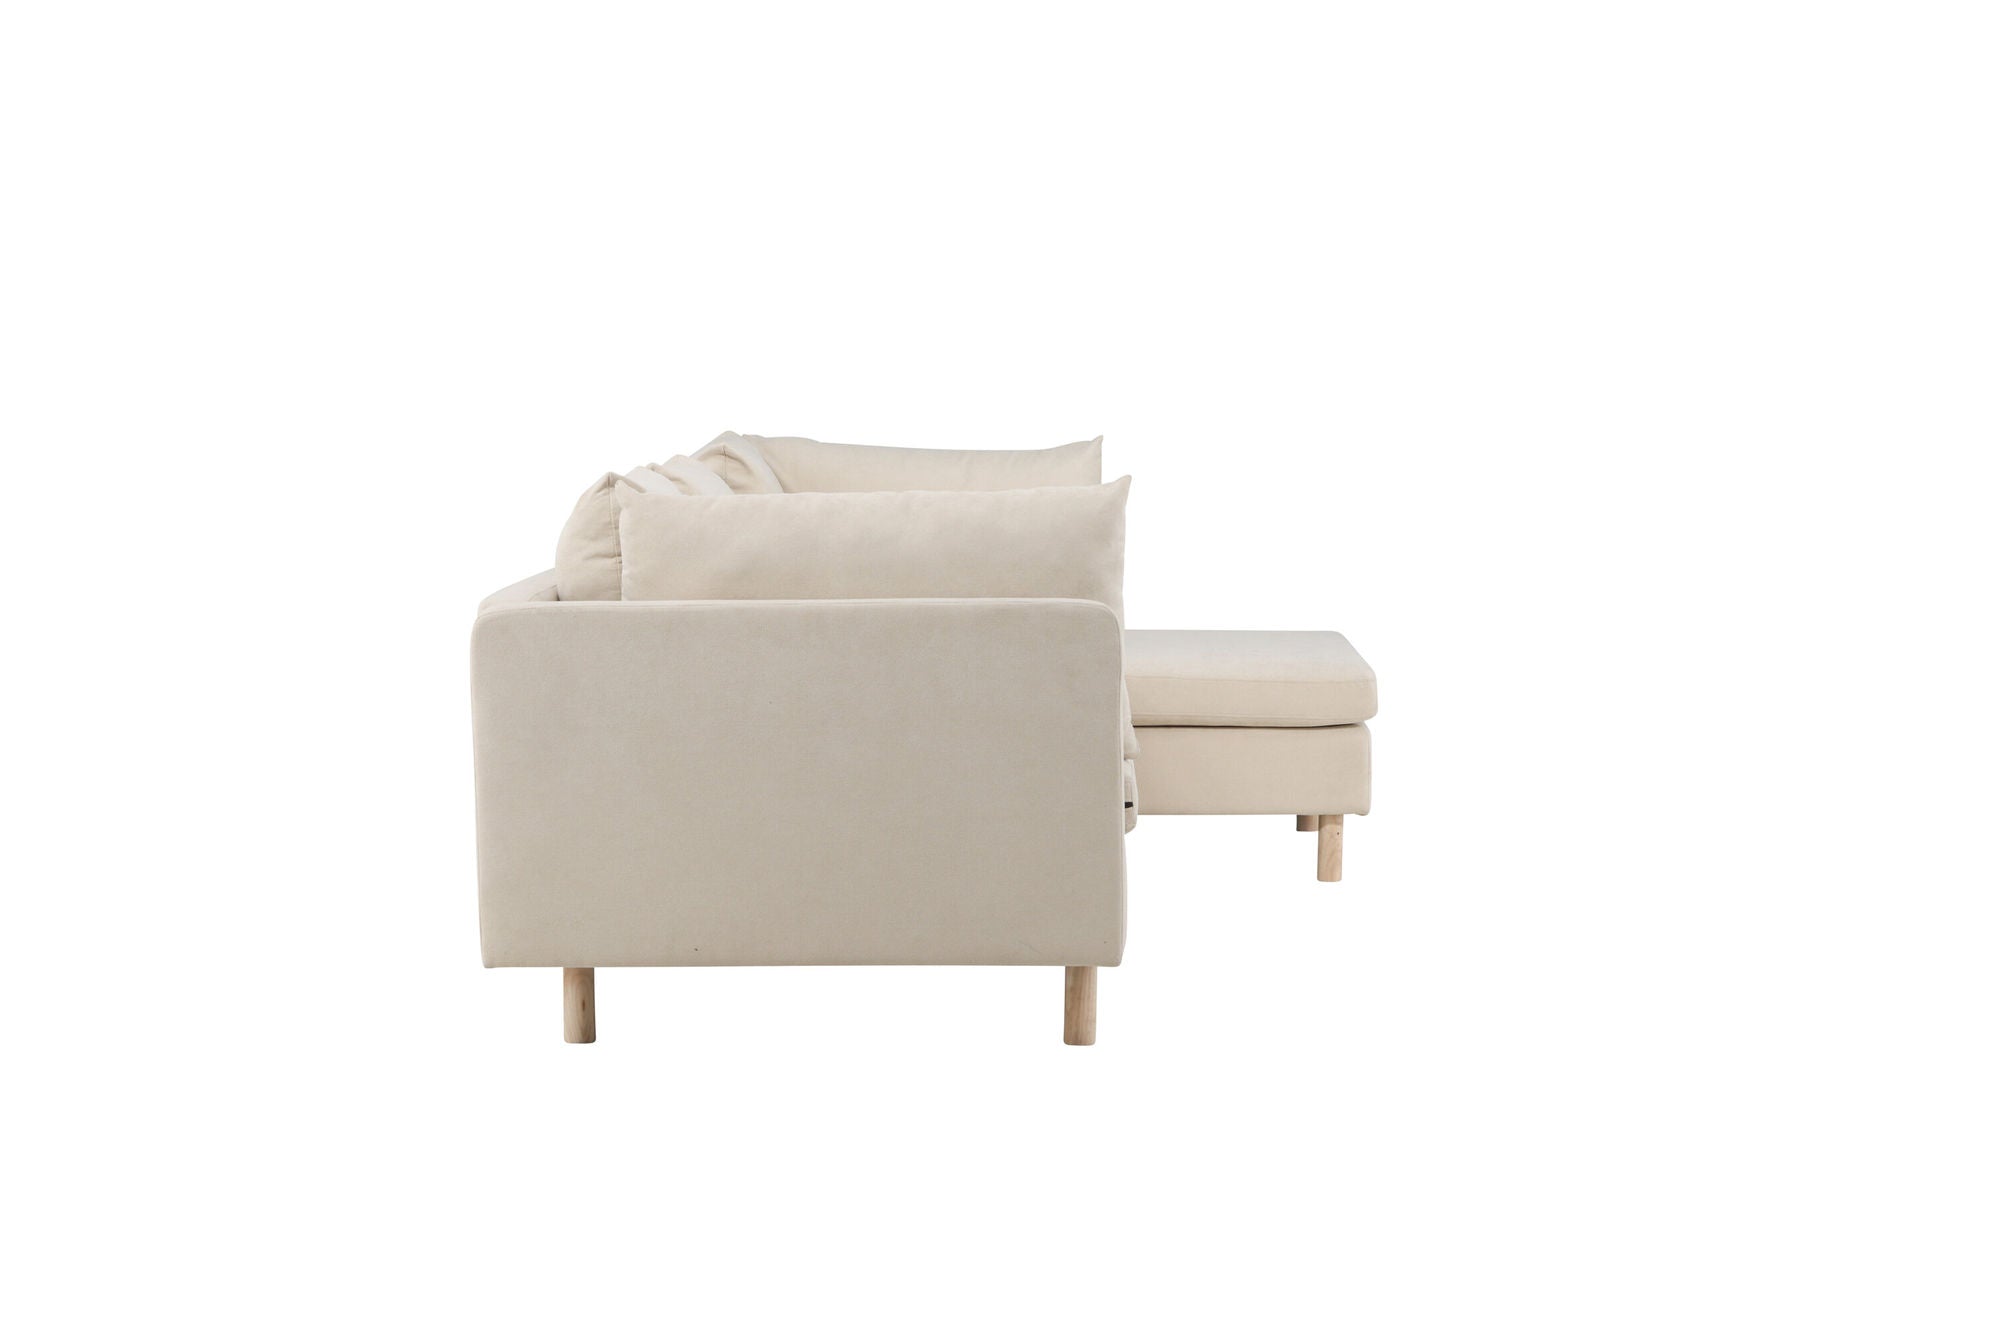 Venture Home Zero 3-seat Sofa - Woodlook / Beige Fabric